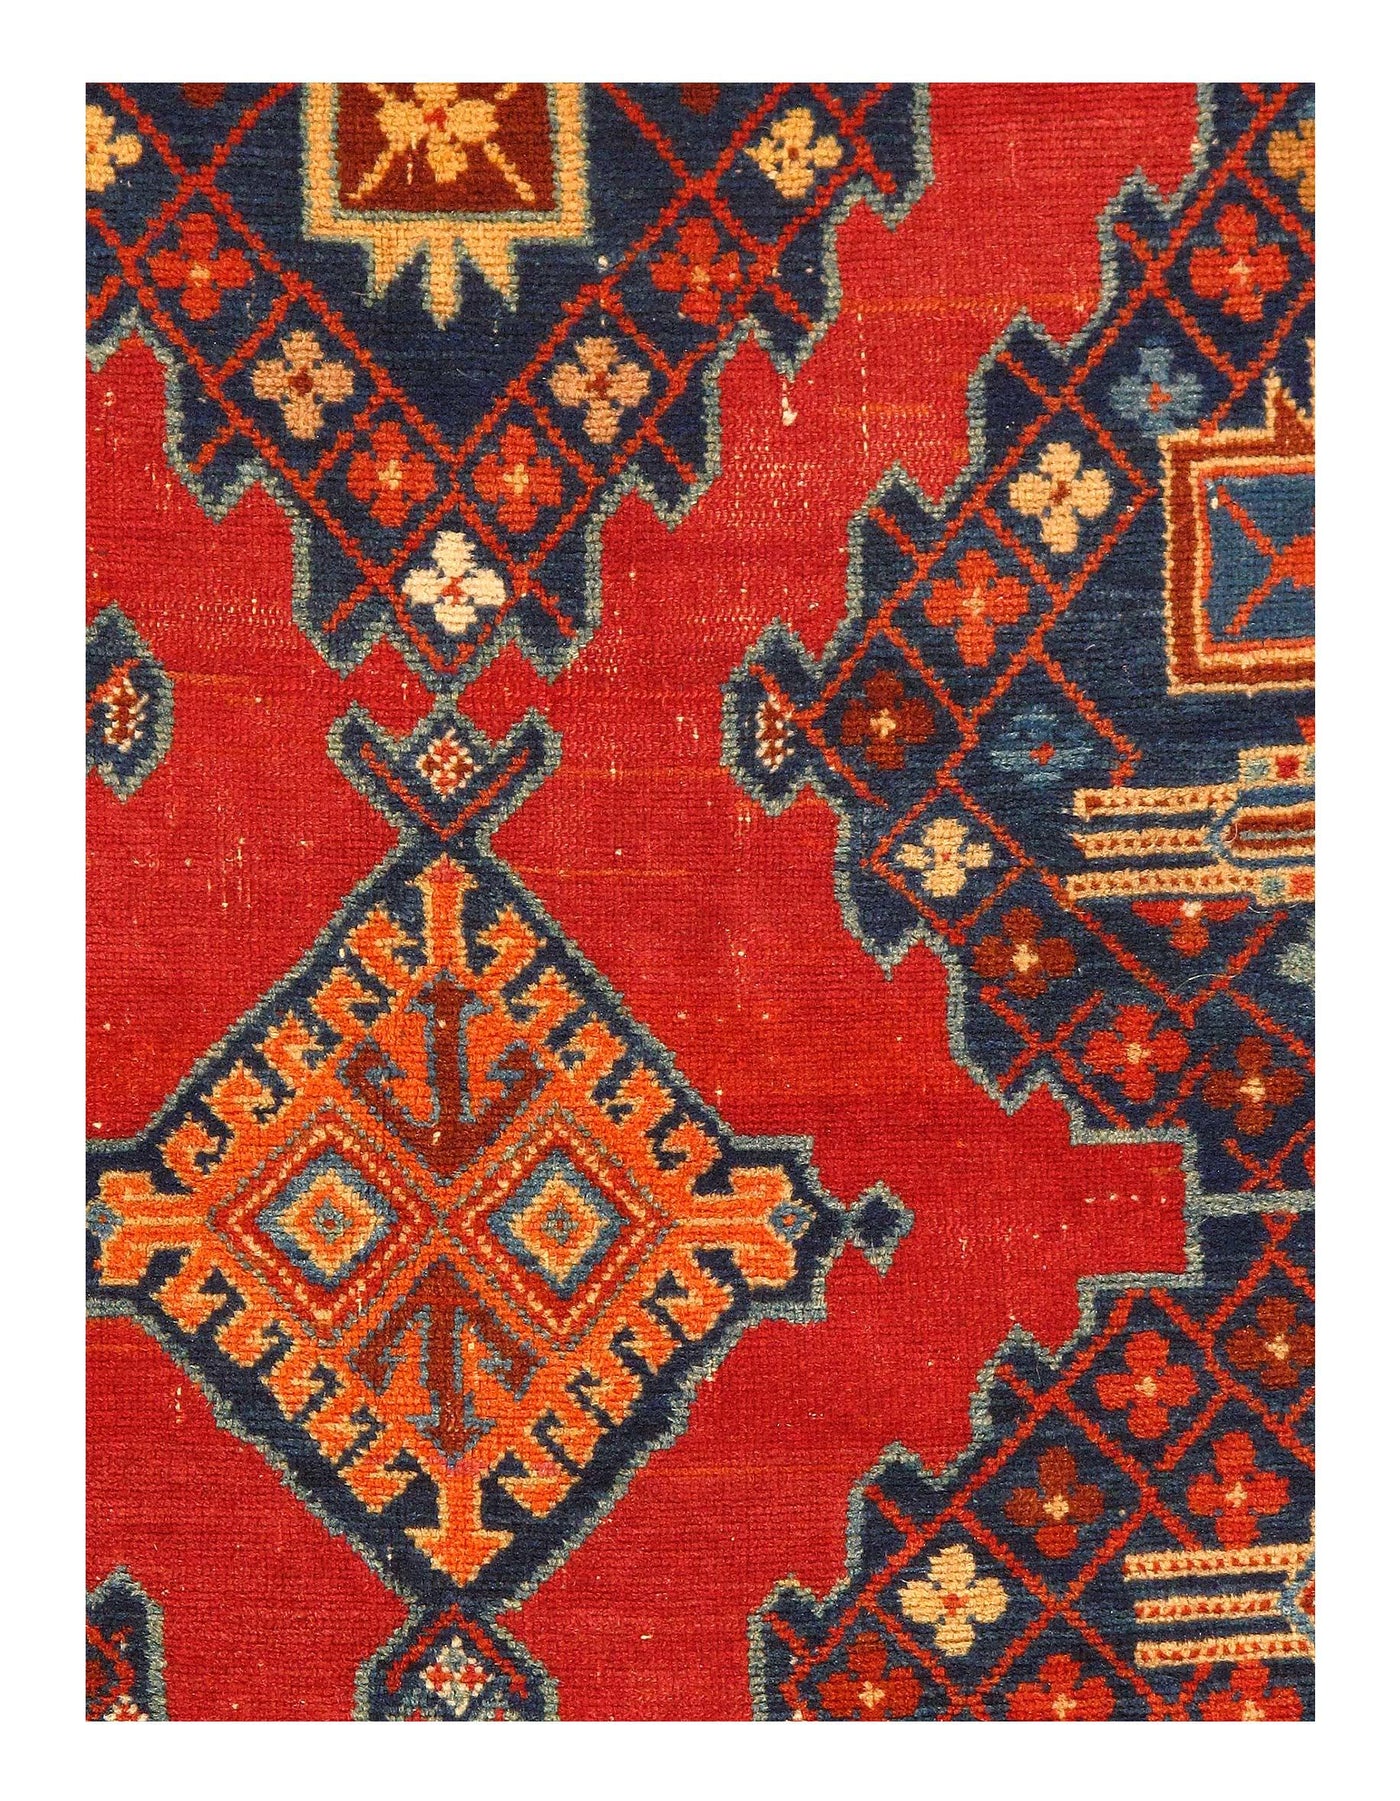 Red color Antique Caucasian Russian Kazak Rug 4'5'' X 6'11''